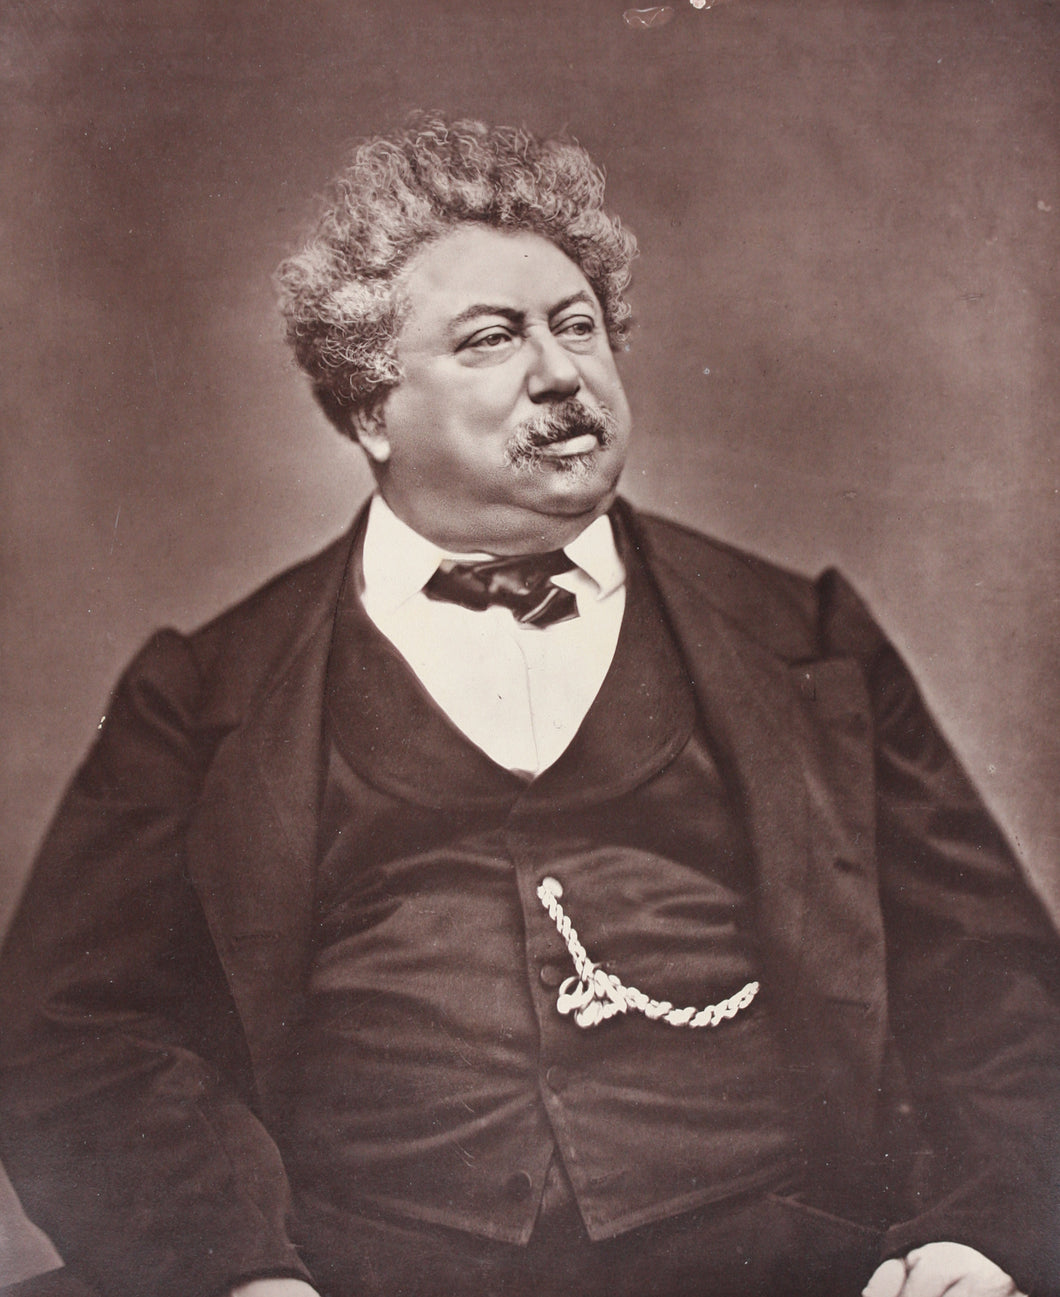 Étienne Carjat. Photo portrait of Alexandre Dumas. Woodburytype. c. 1862.